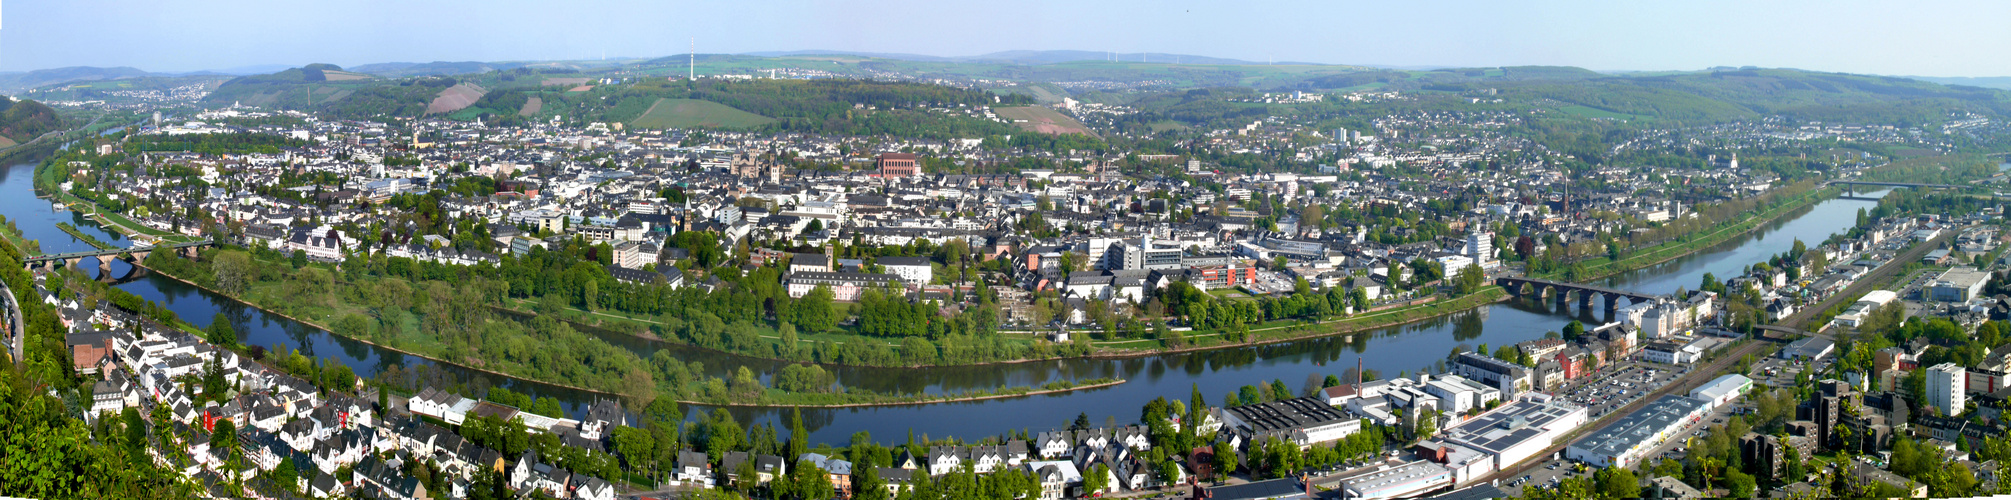 Trier, eingefasst von Mosel und Wein